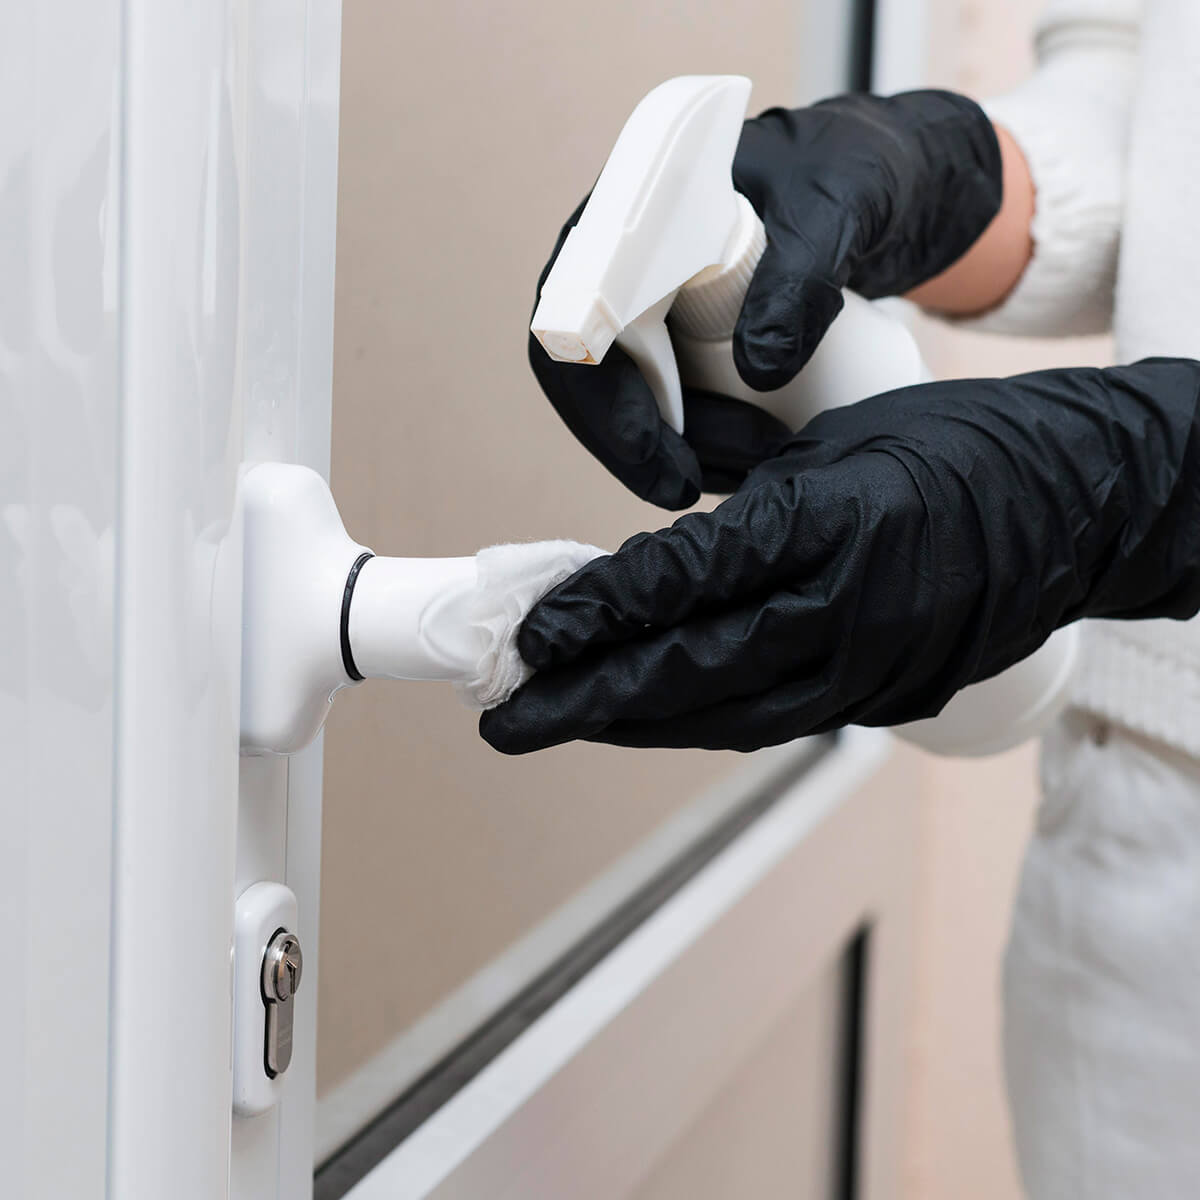 hands-with-gloves-disinfecting-door-handle